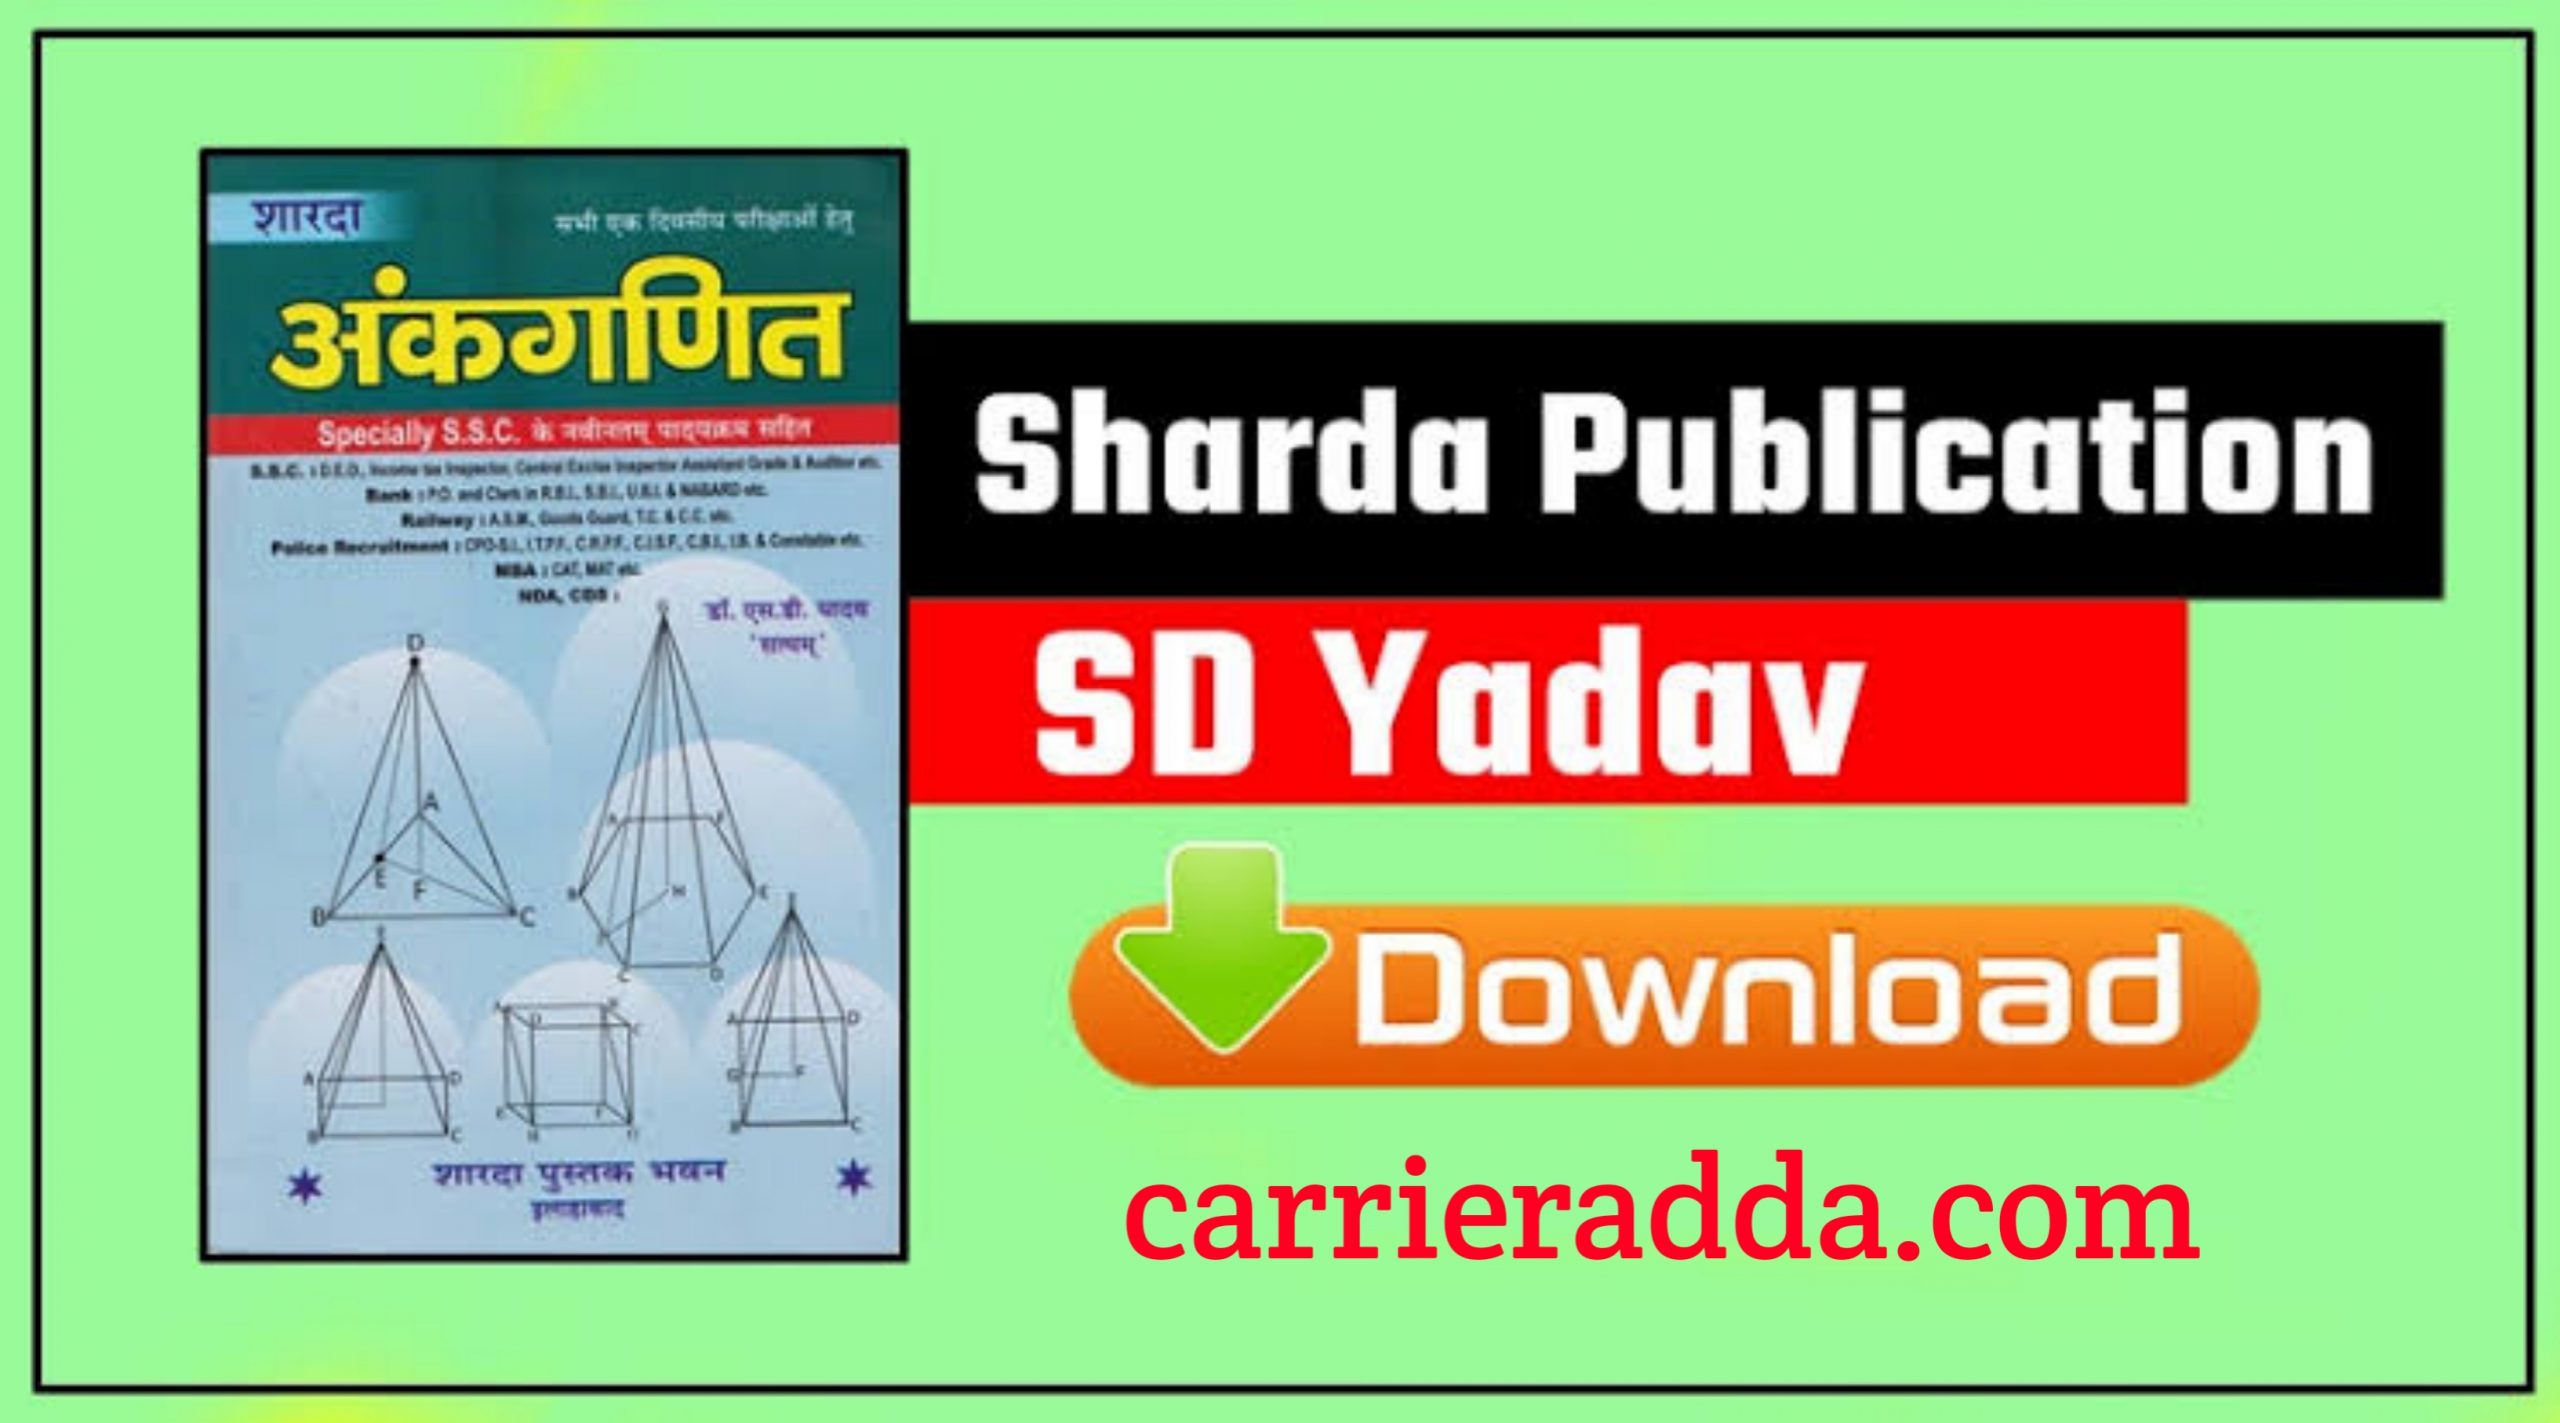 SD Yadav Math Book 2021